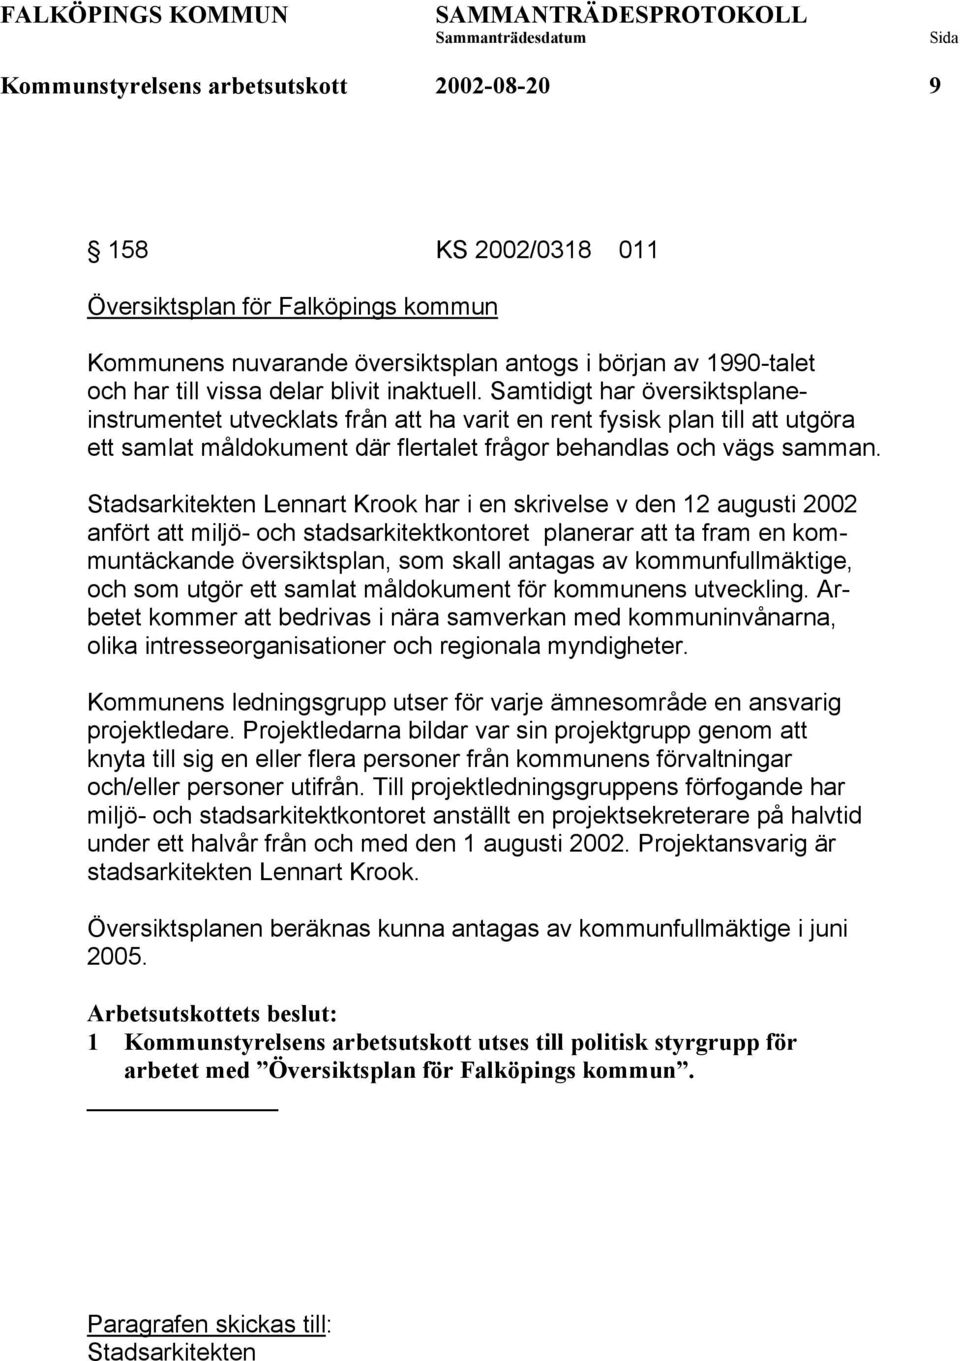 Stadsarkitekten Lennart Krook har i en skrivelse v den 12 augusti 2002 anfört att miljö- och stadsarkitektkontoret planerar att ta fram en kommuntäckande översiktsplan, som skall antagas av